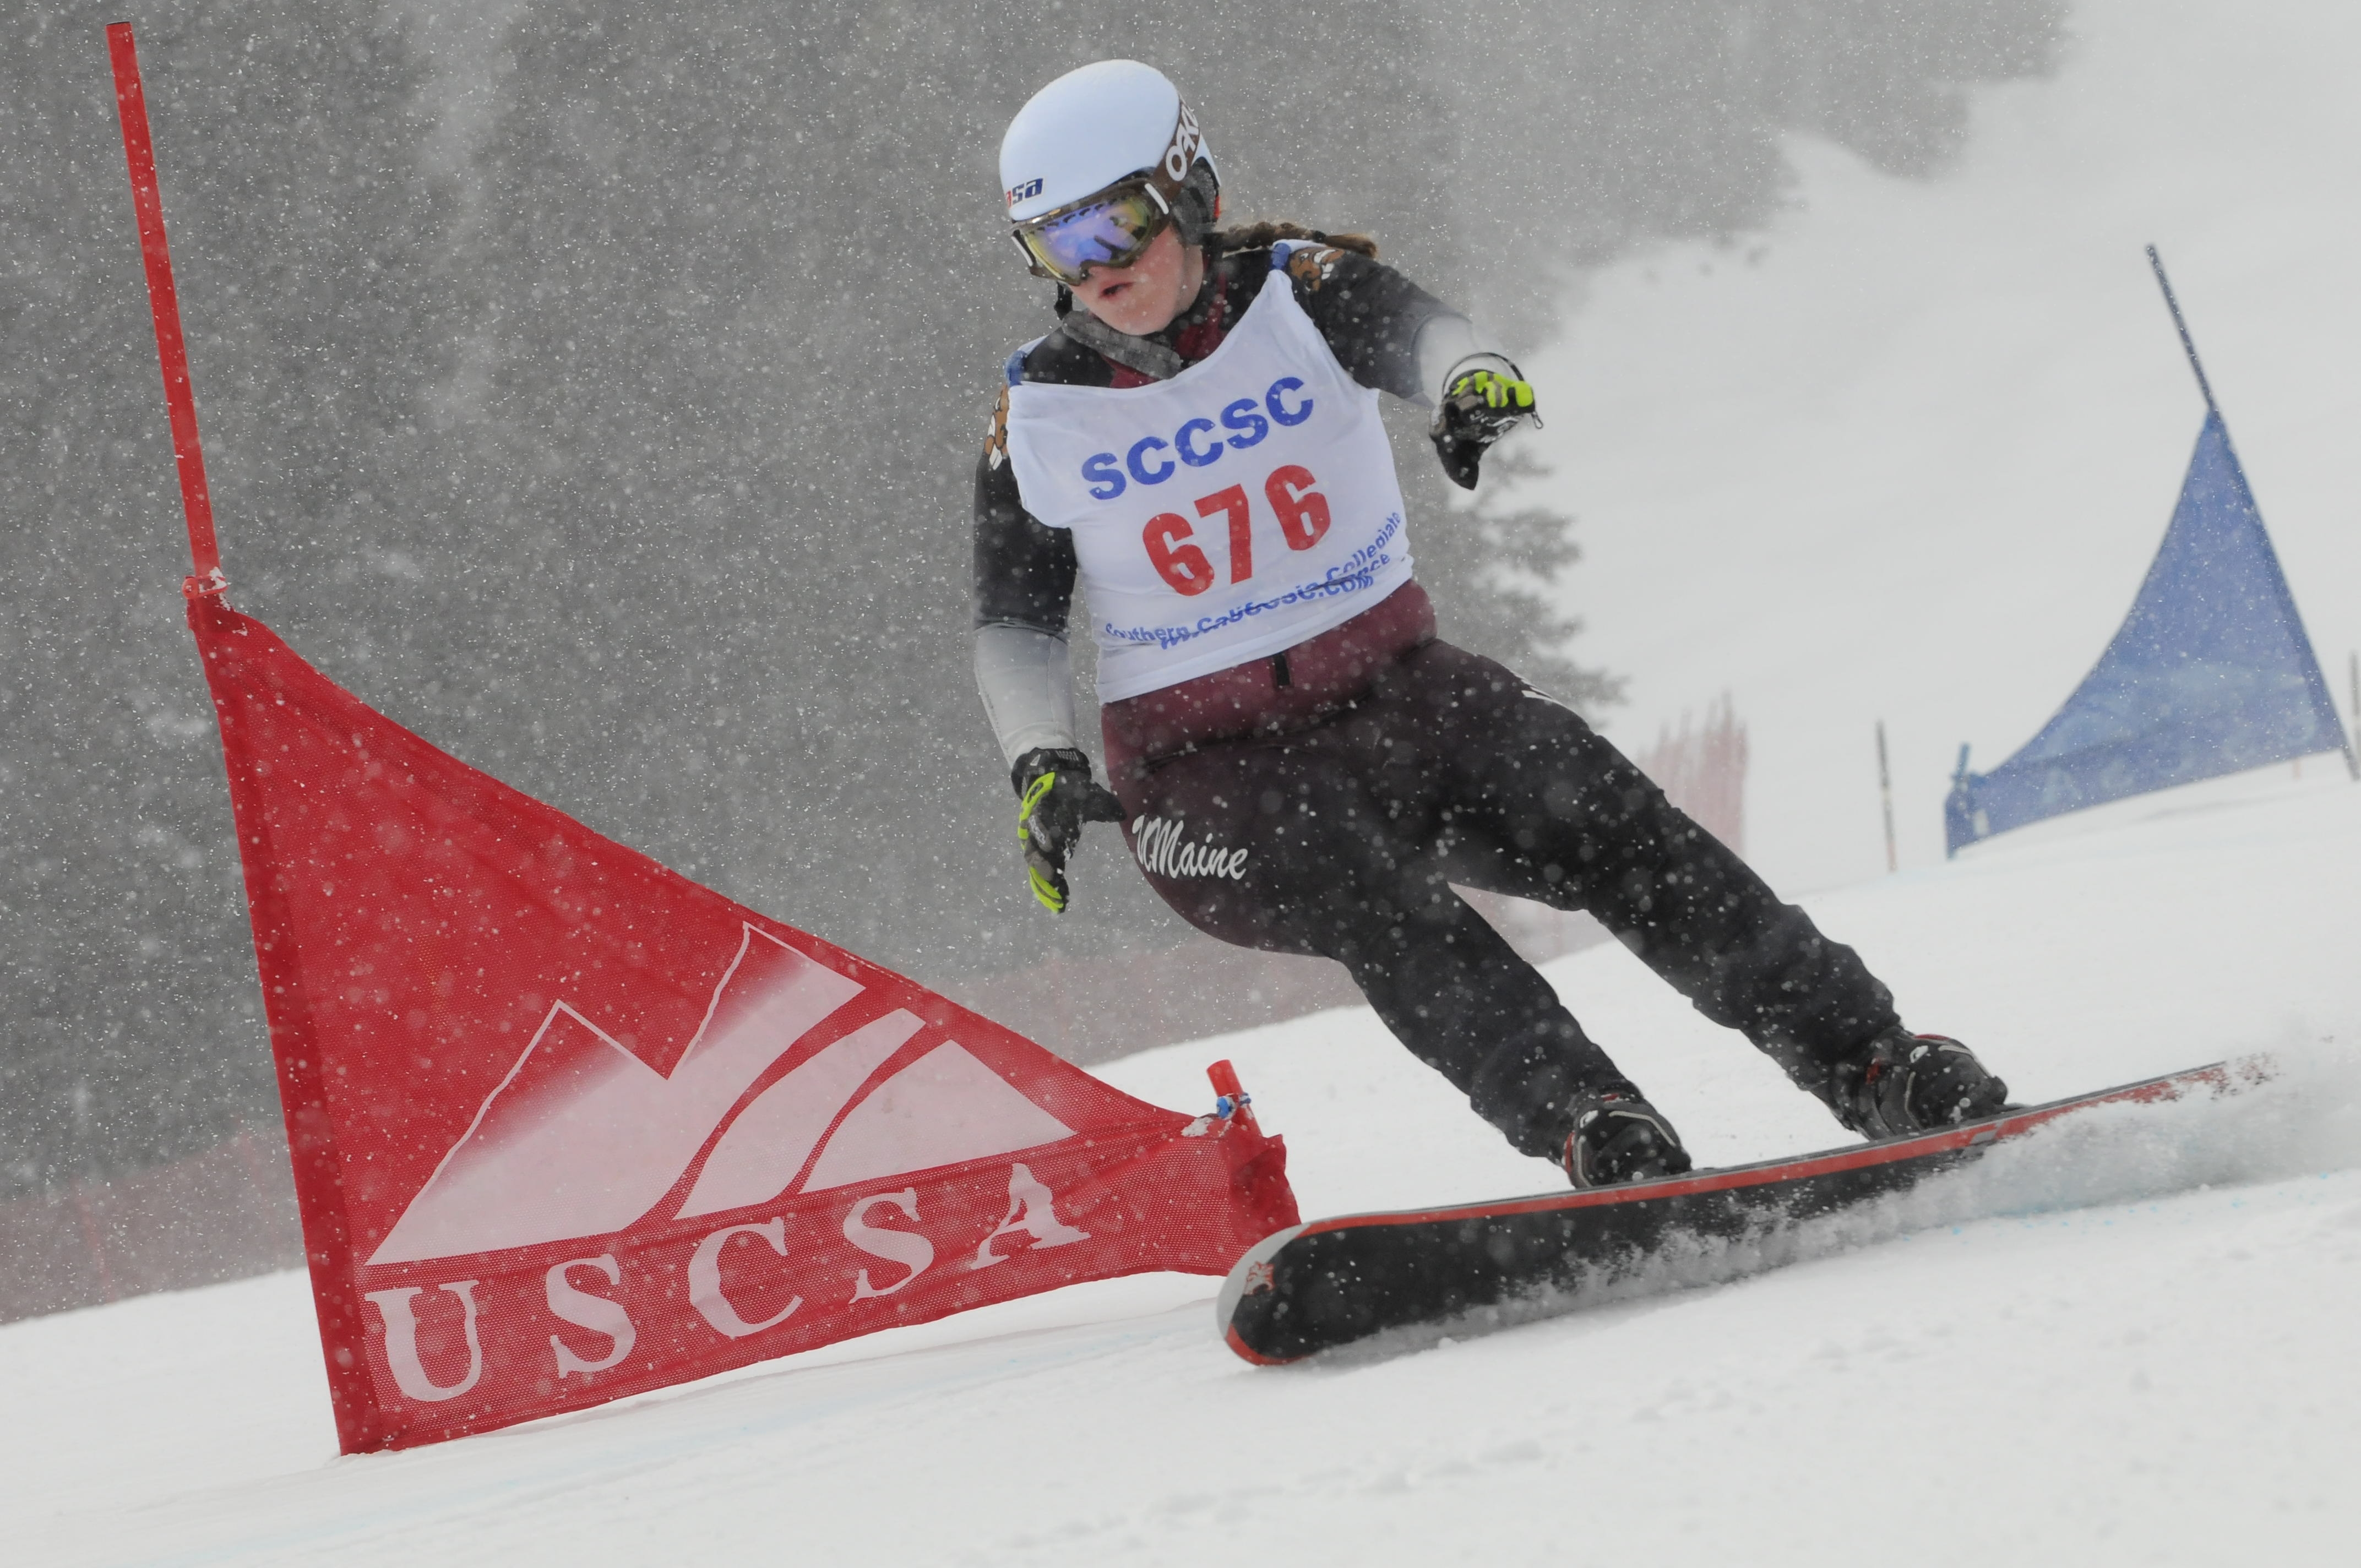 2022 US Collegiate Ski & Snowboard National Championships - USCSA